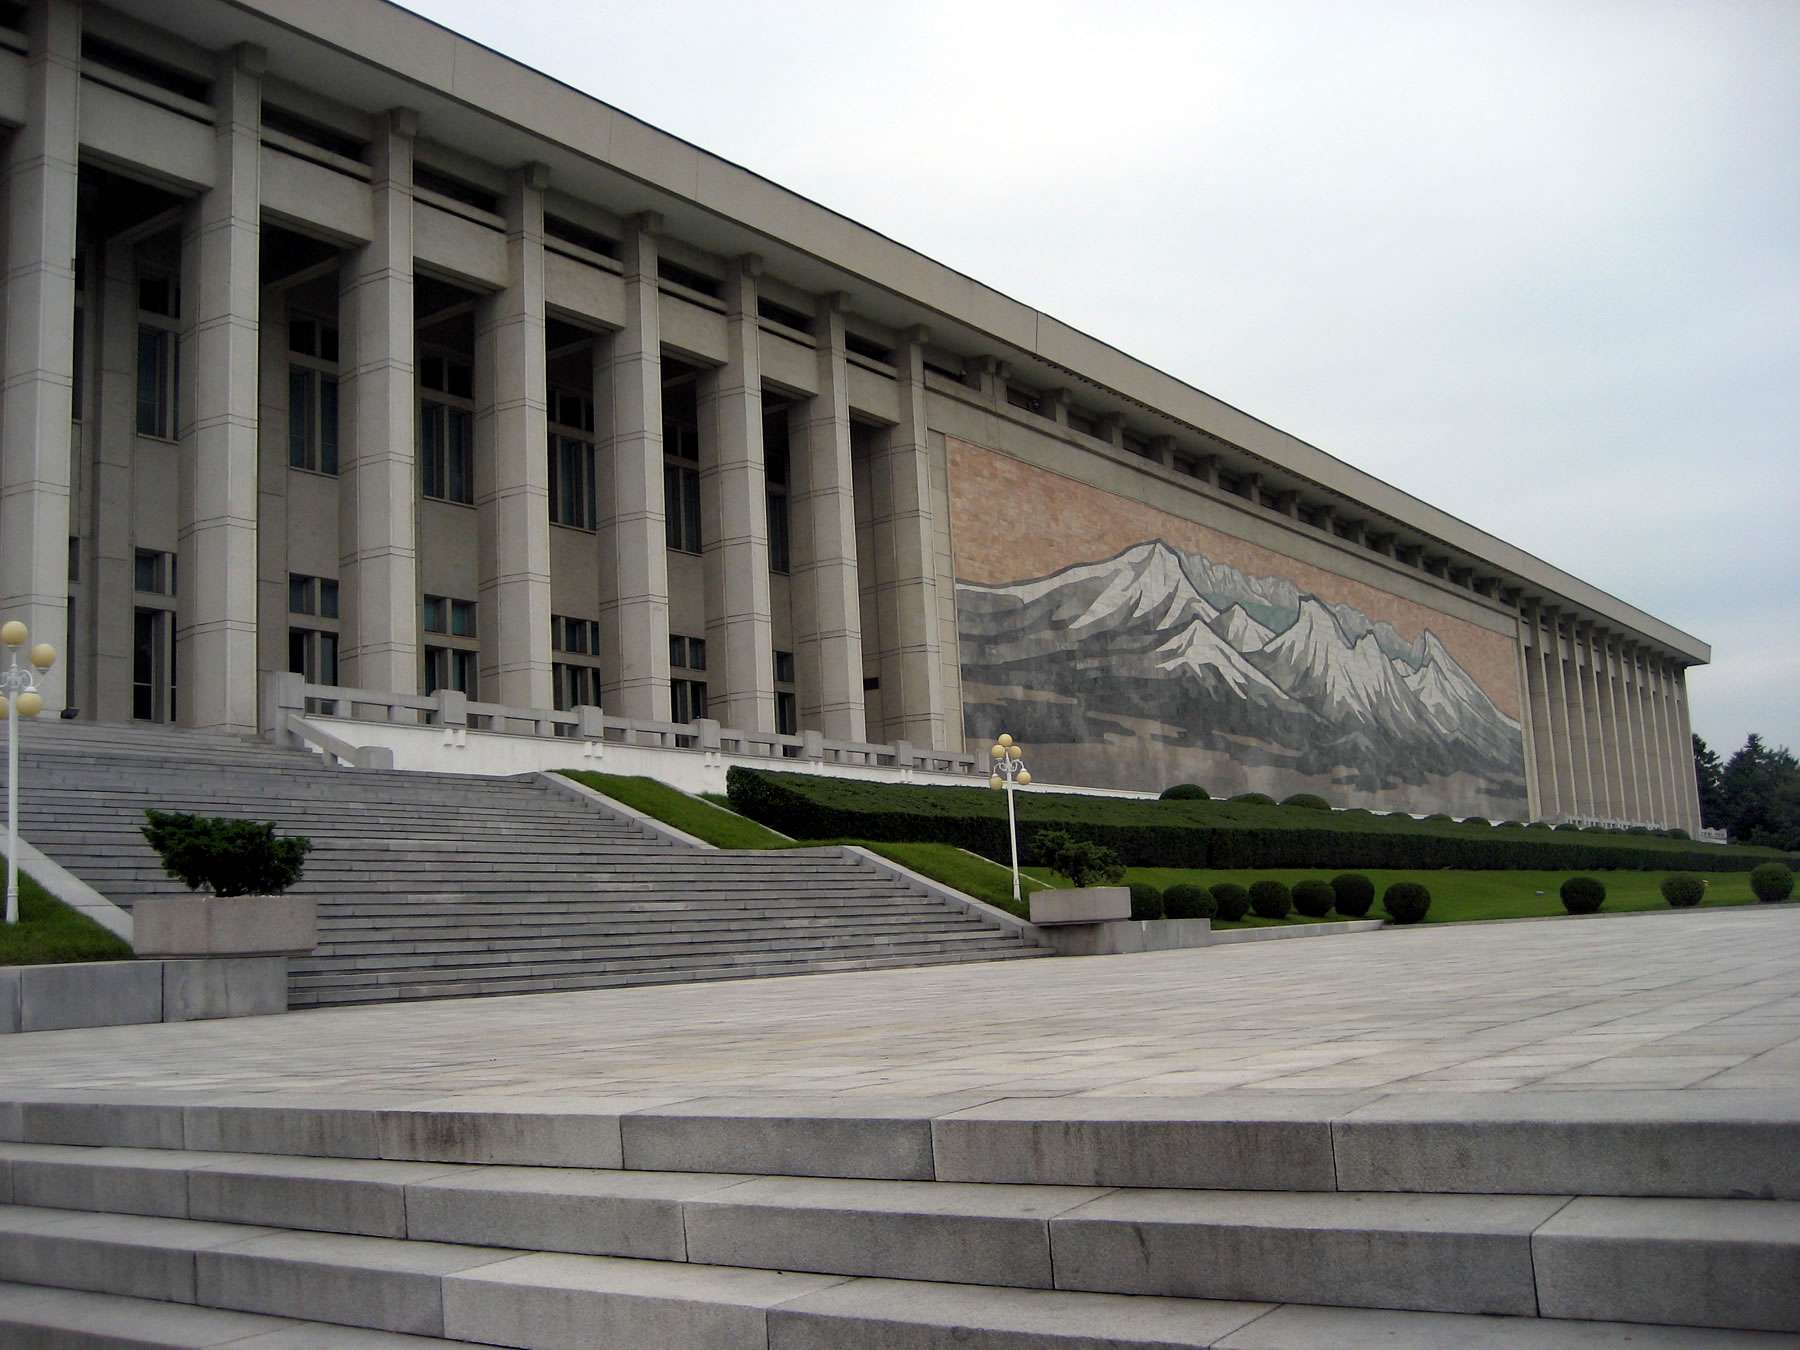 朝鲜革命博物馆 Korean Revolution Museum